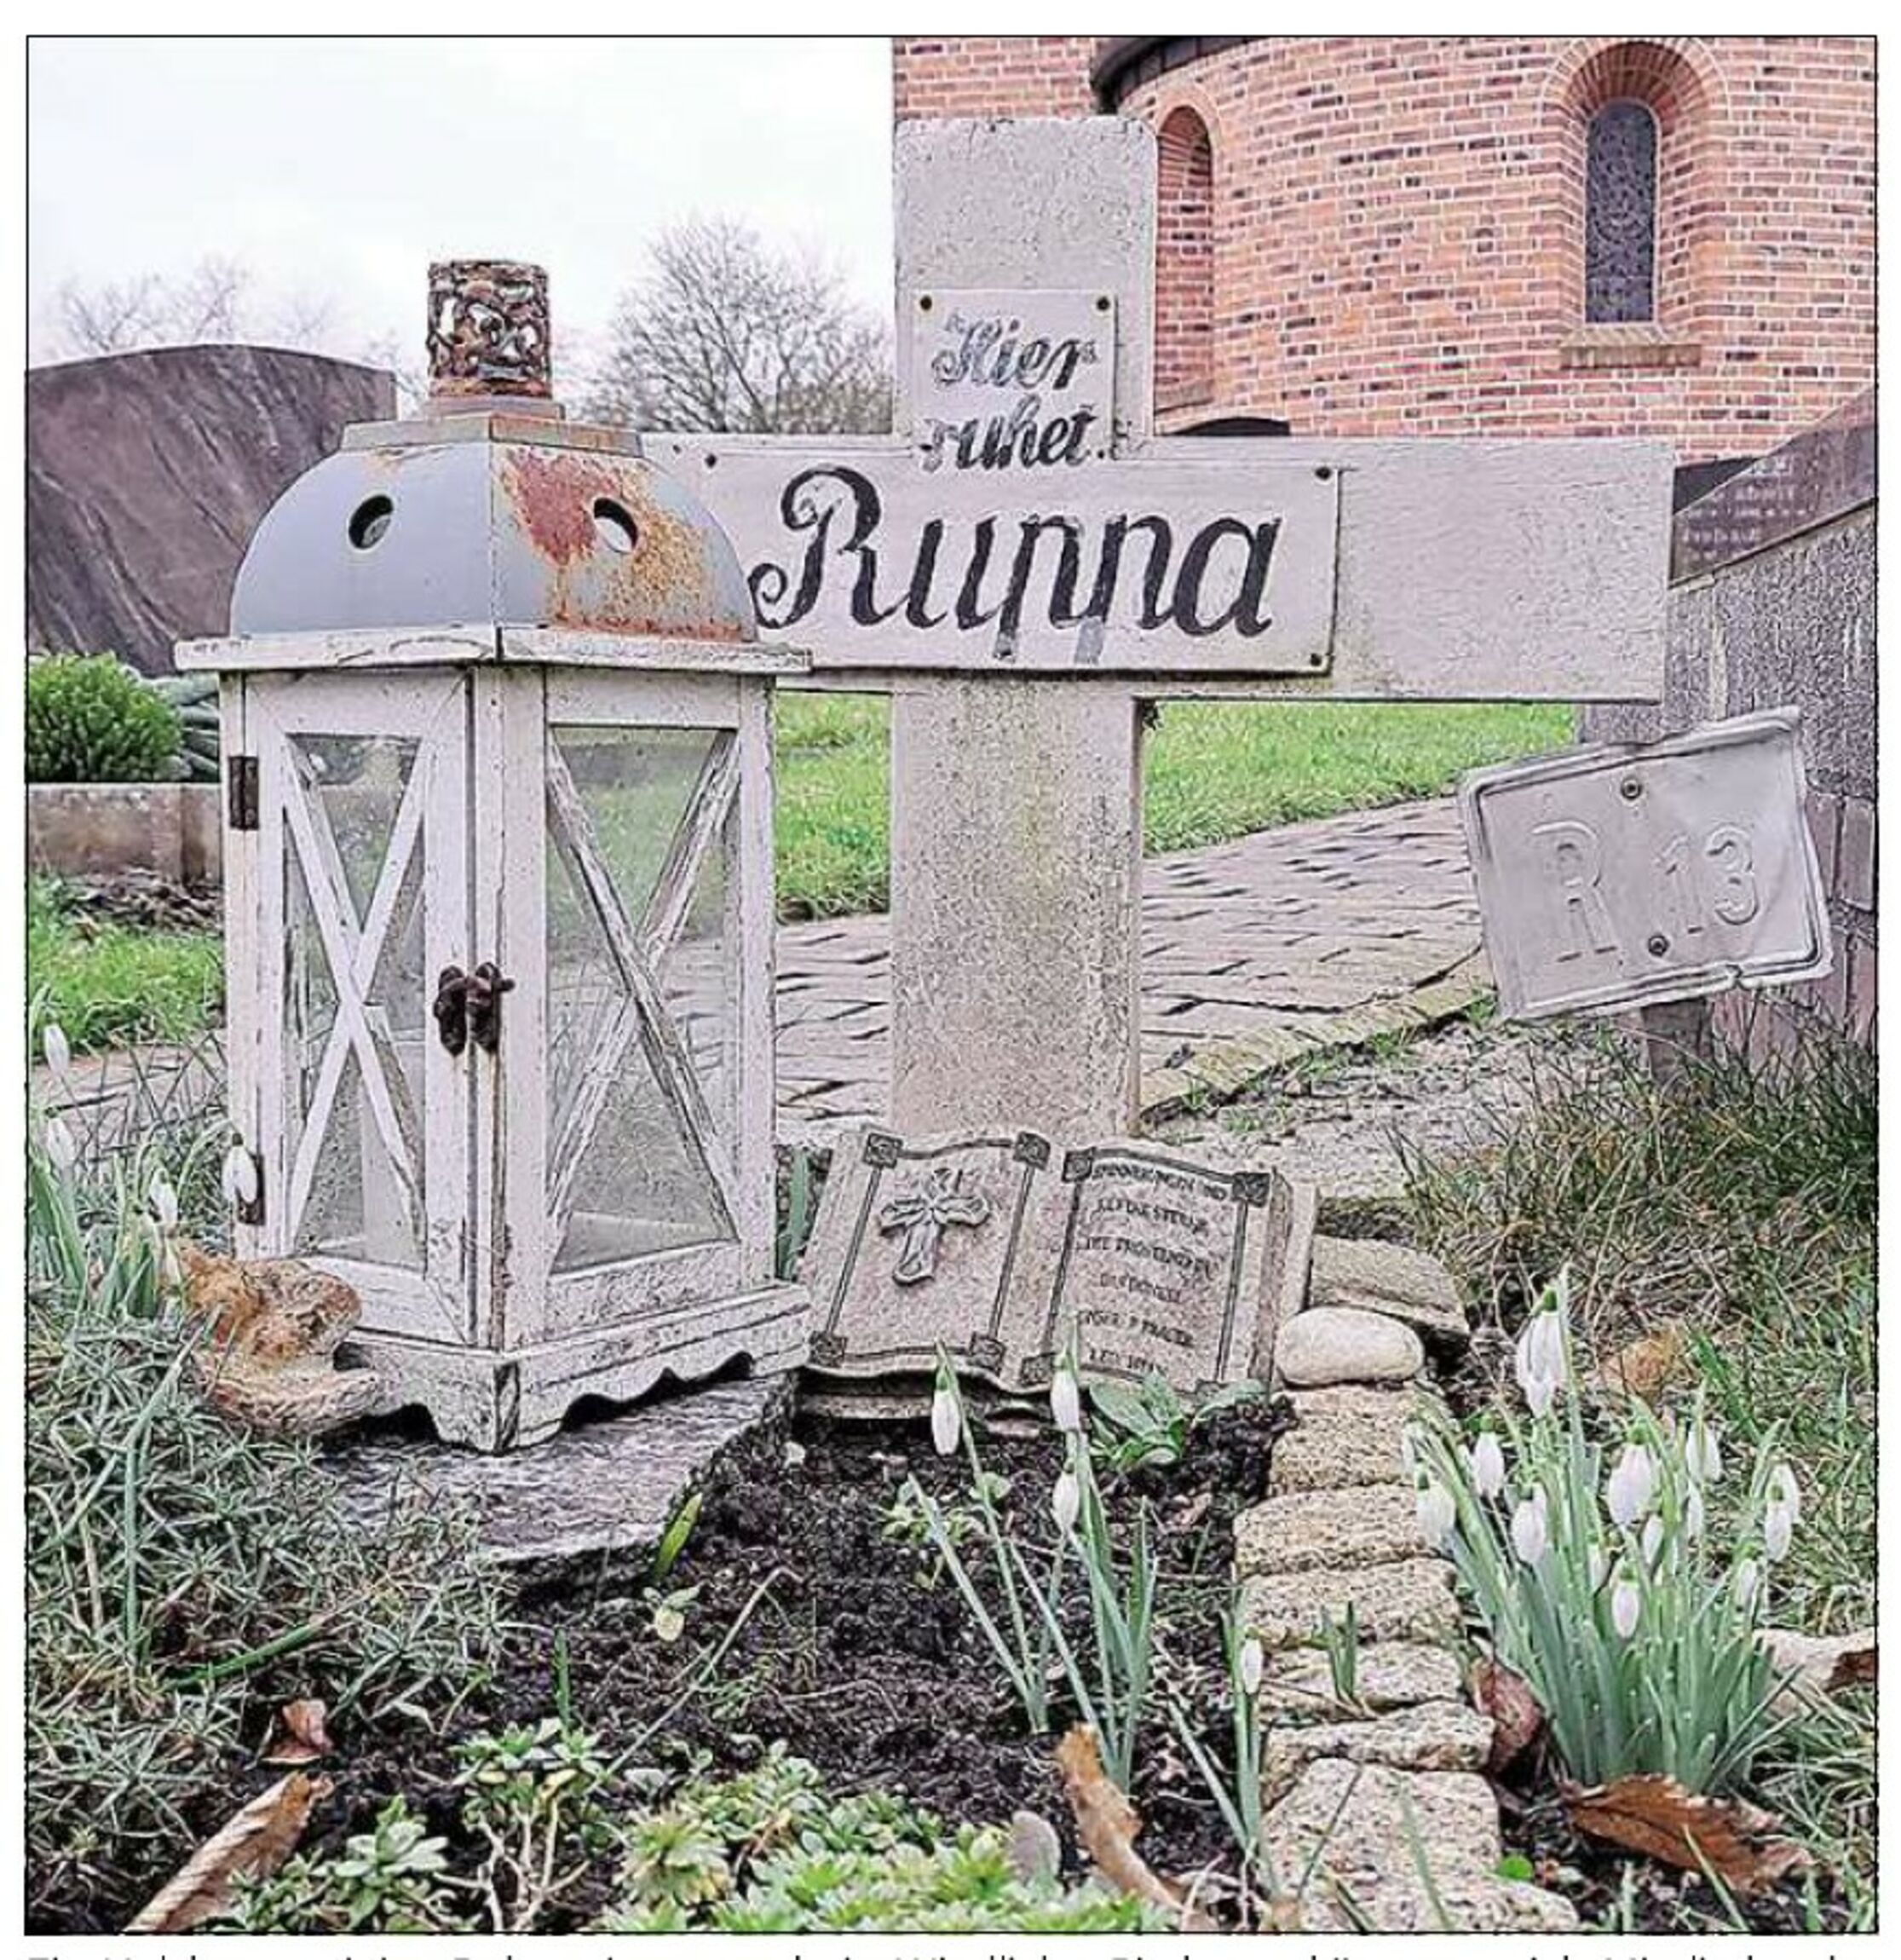 Grabstätte von "Ruppa" oder Marie Trouper in Bingum